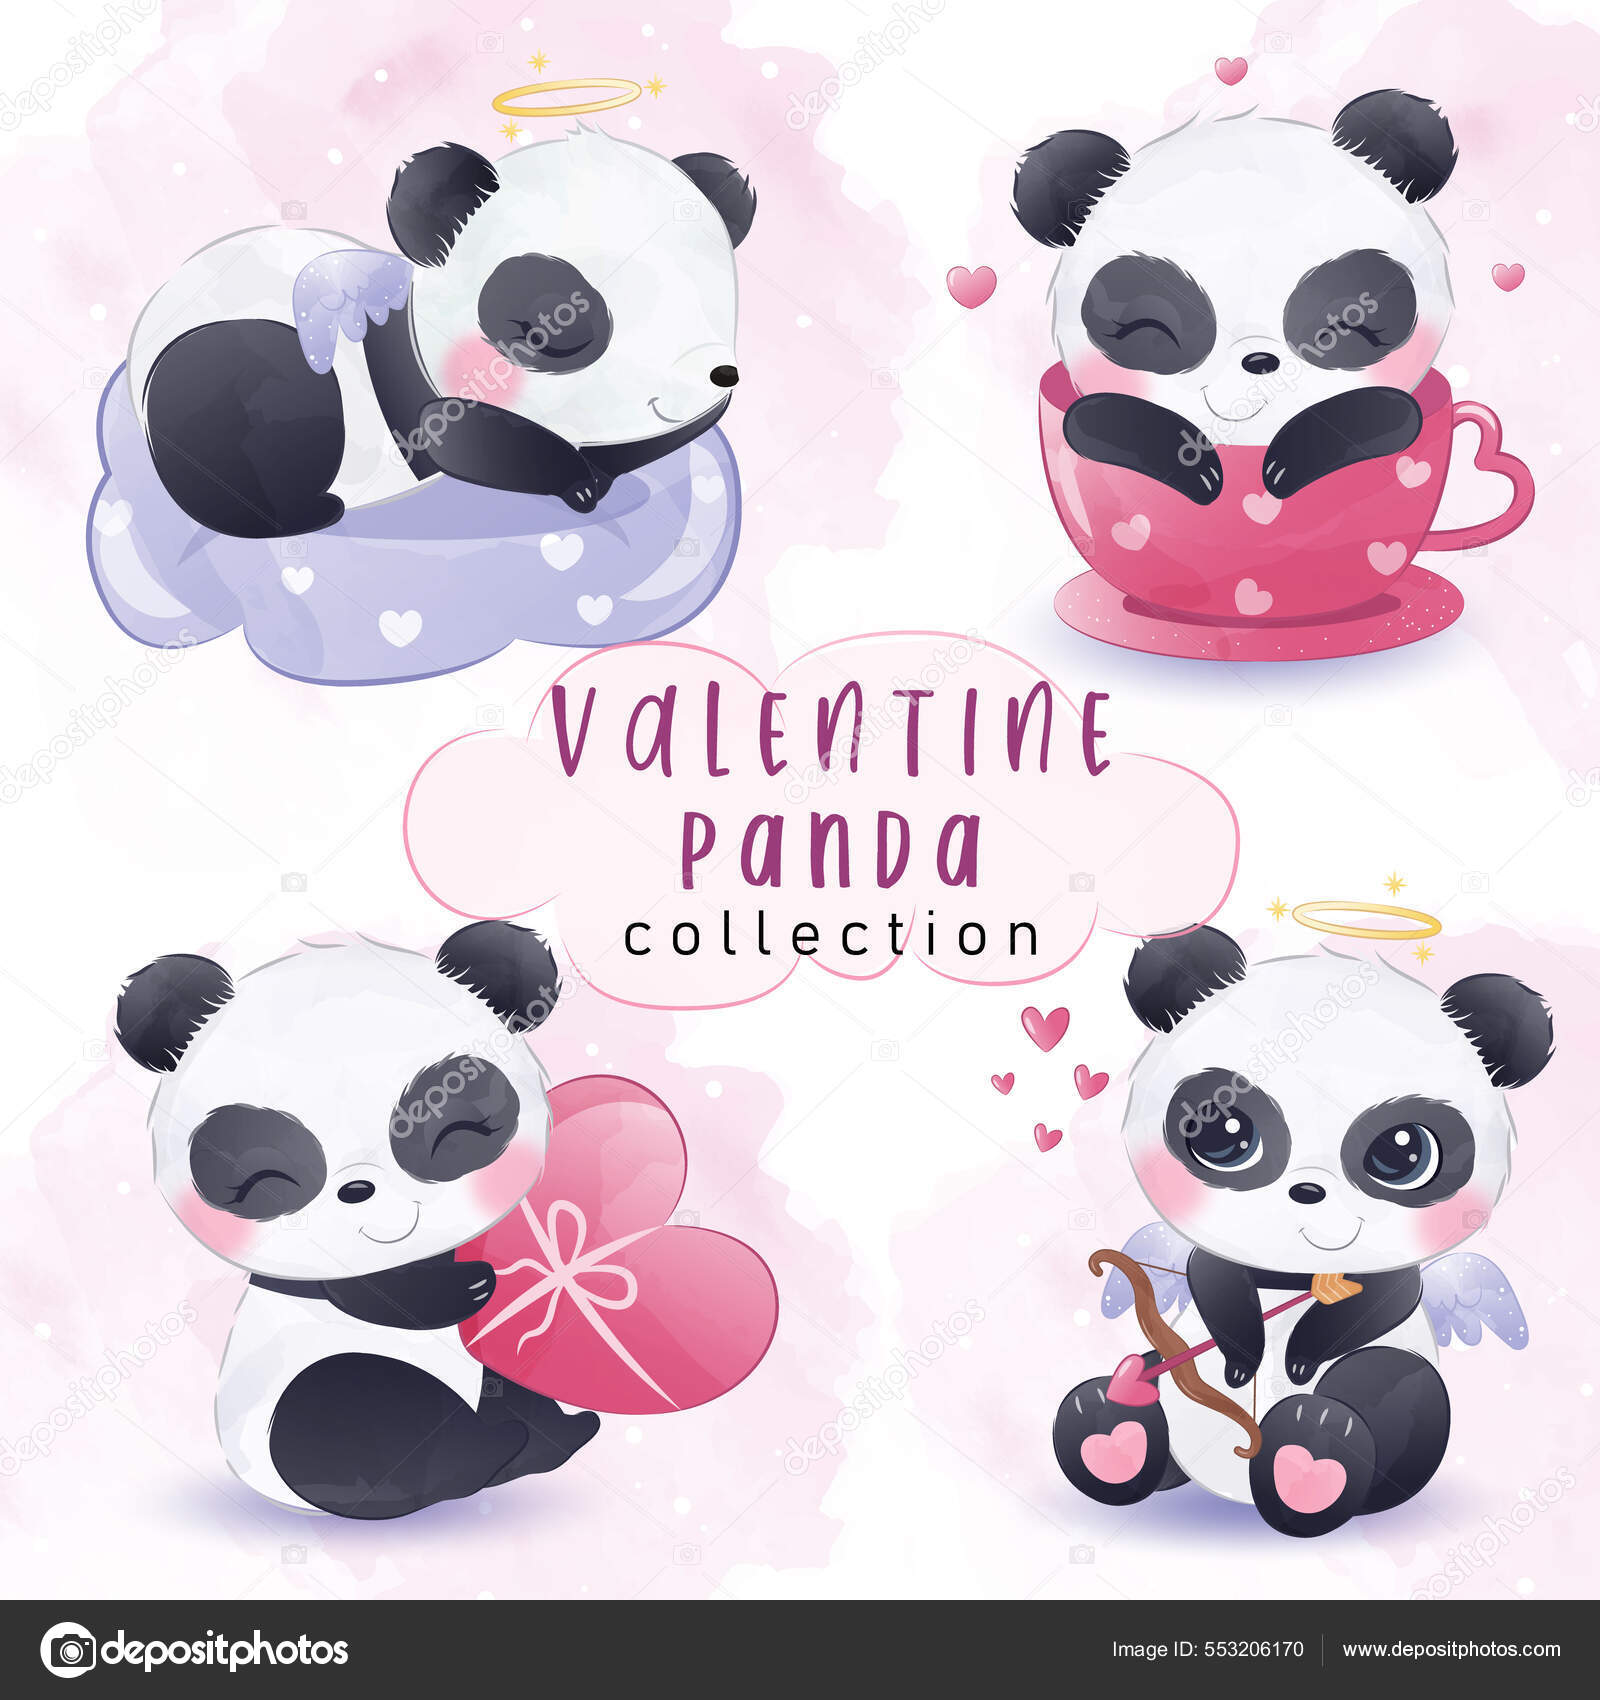 Cute kawaii panda Wallpapers Download